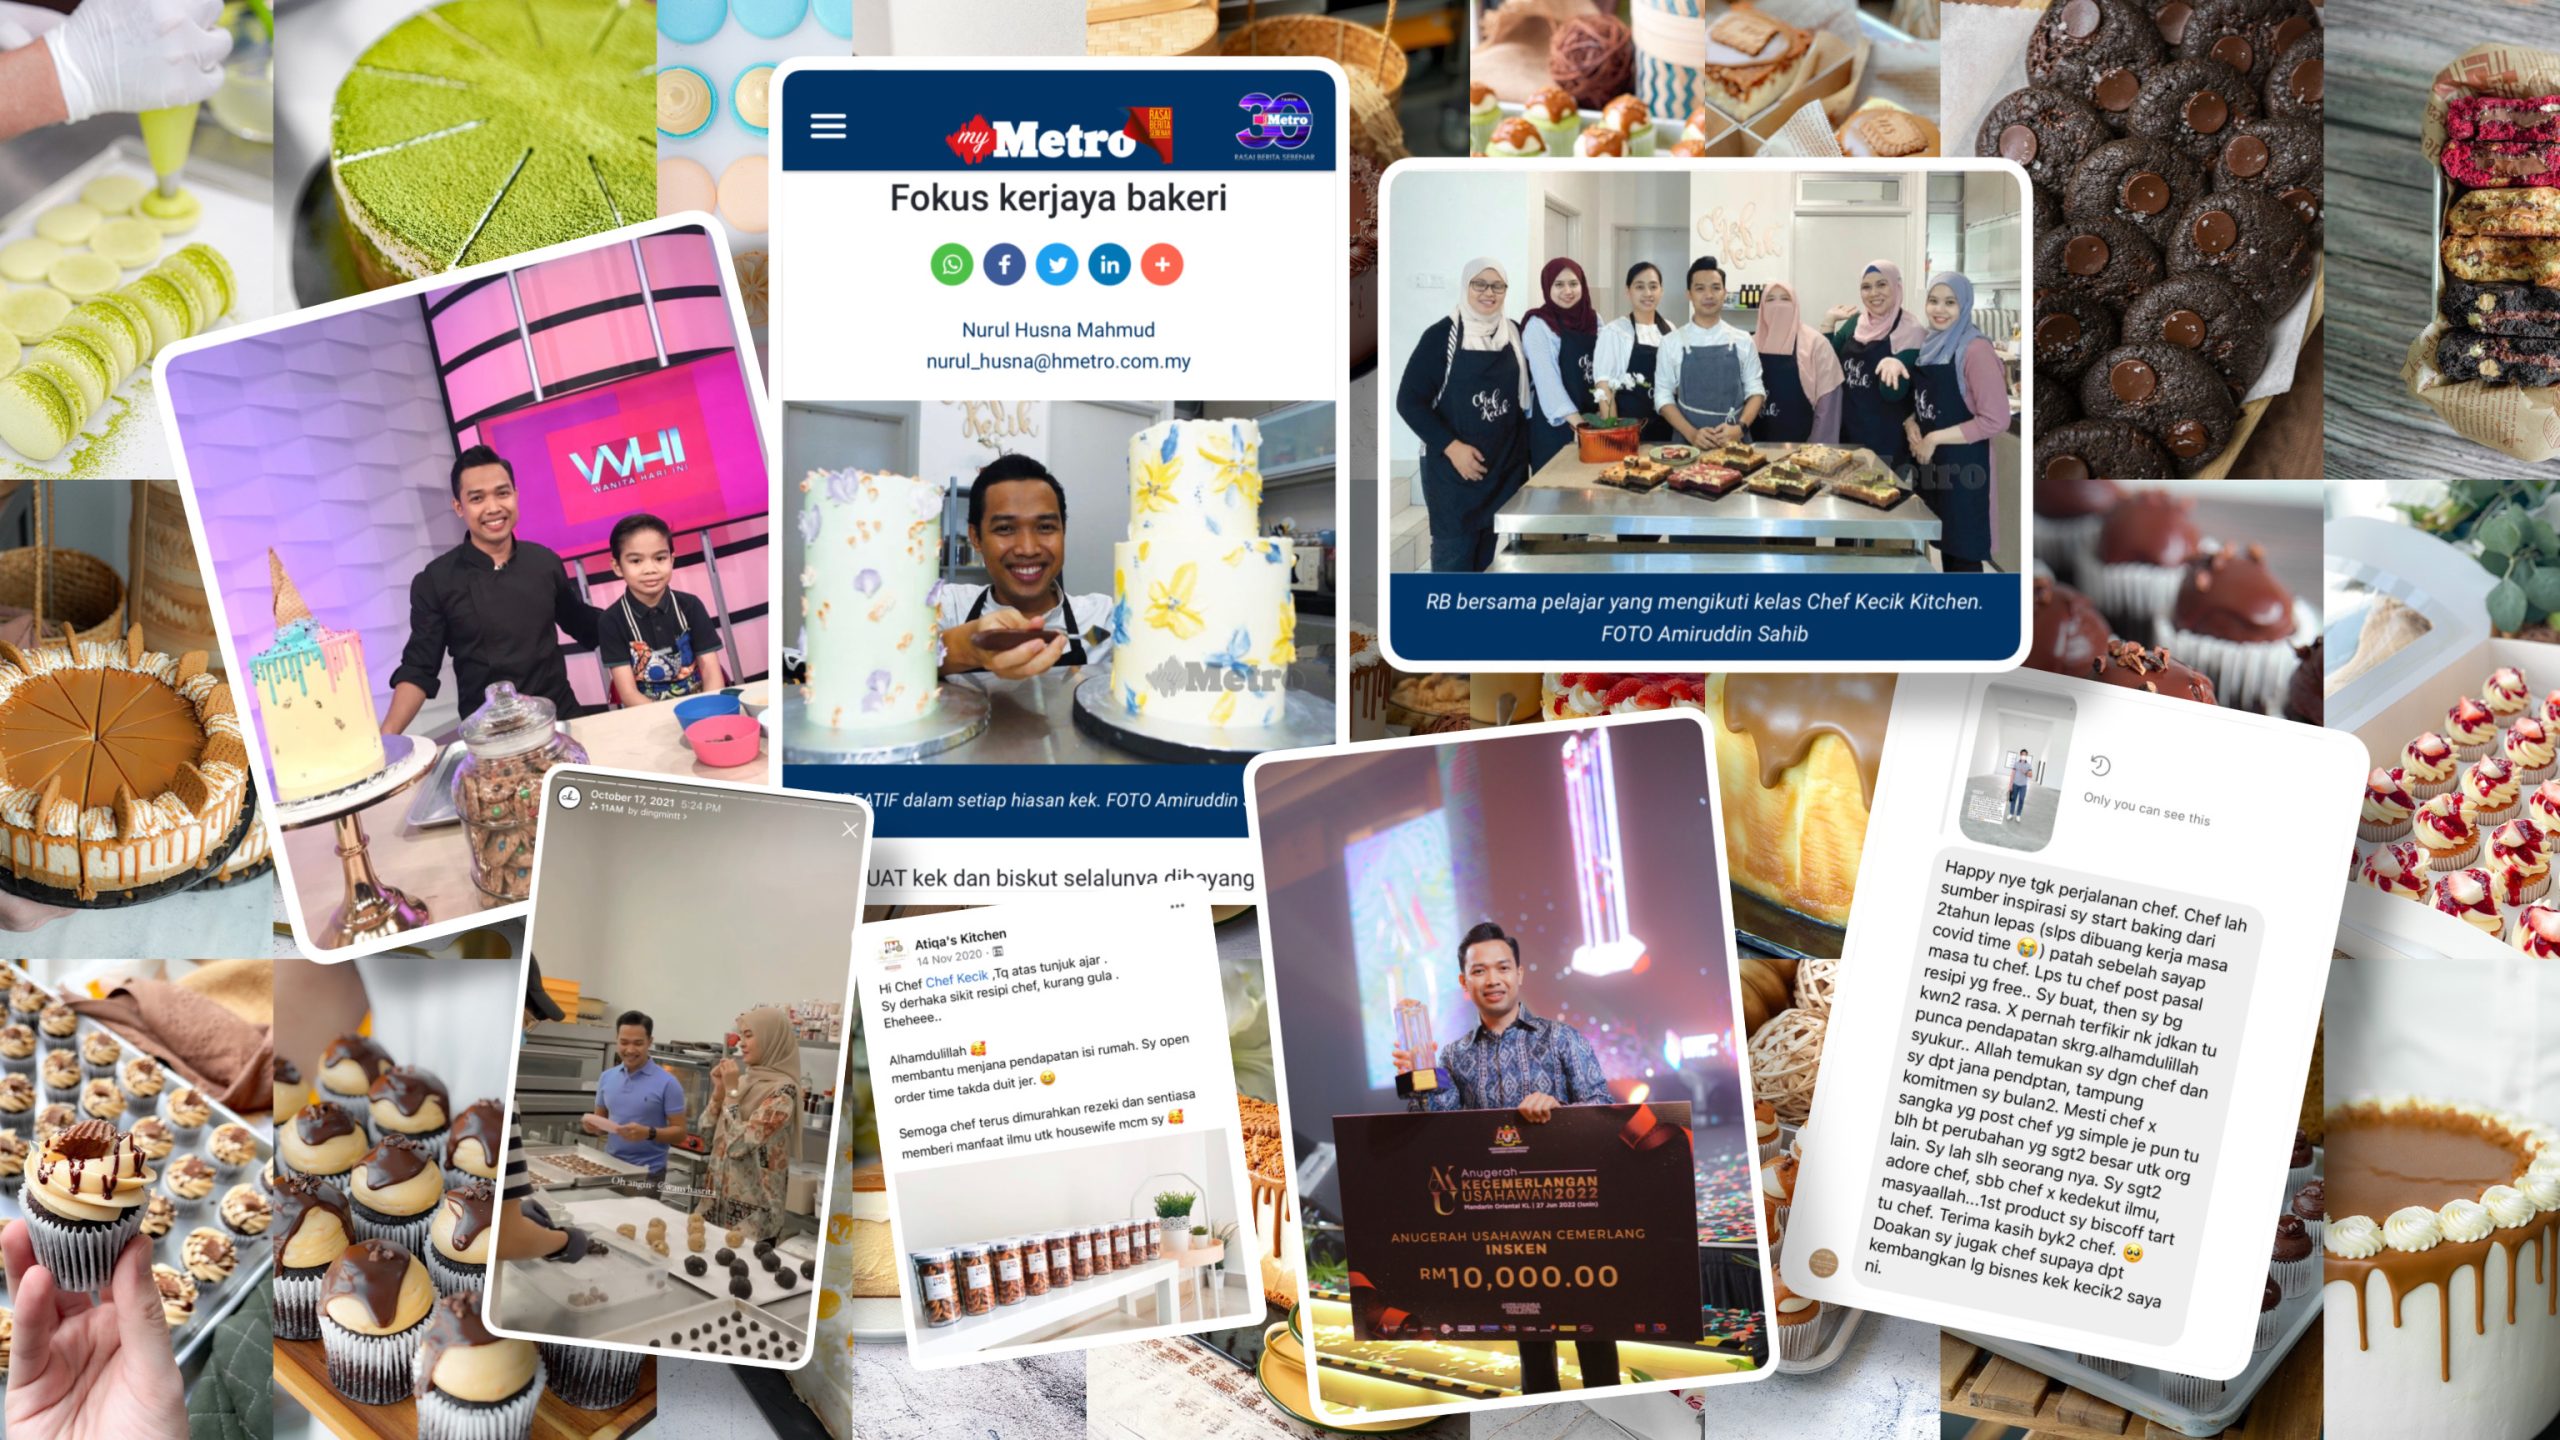 Gambar Chef Kecik menerima Anugerah Usahawan Cemerlang, gambar masuk akhbar Harian Metro, gambar beramai-ramai dengan student PJJ CK, testimoni, Wany Hasrita, TV3 dan produk CK.